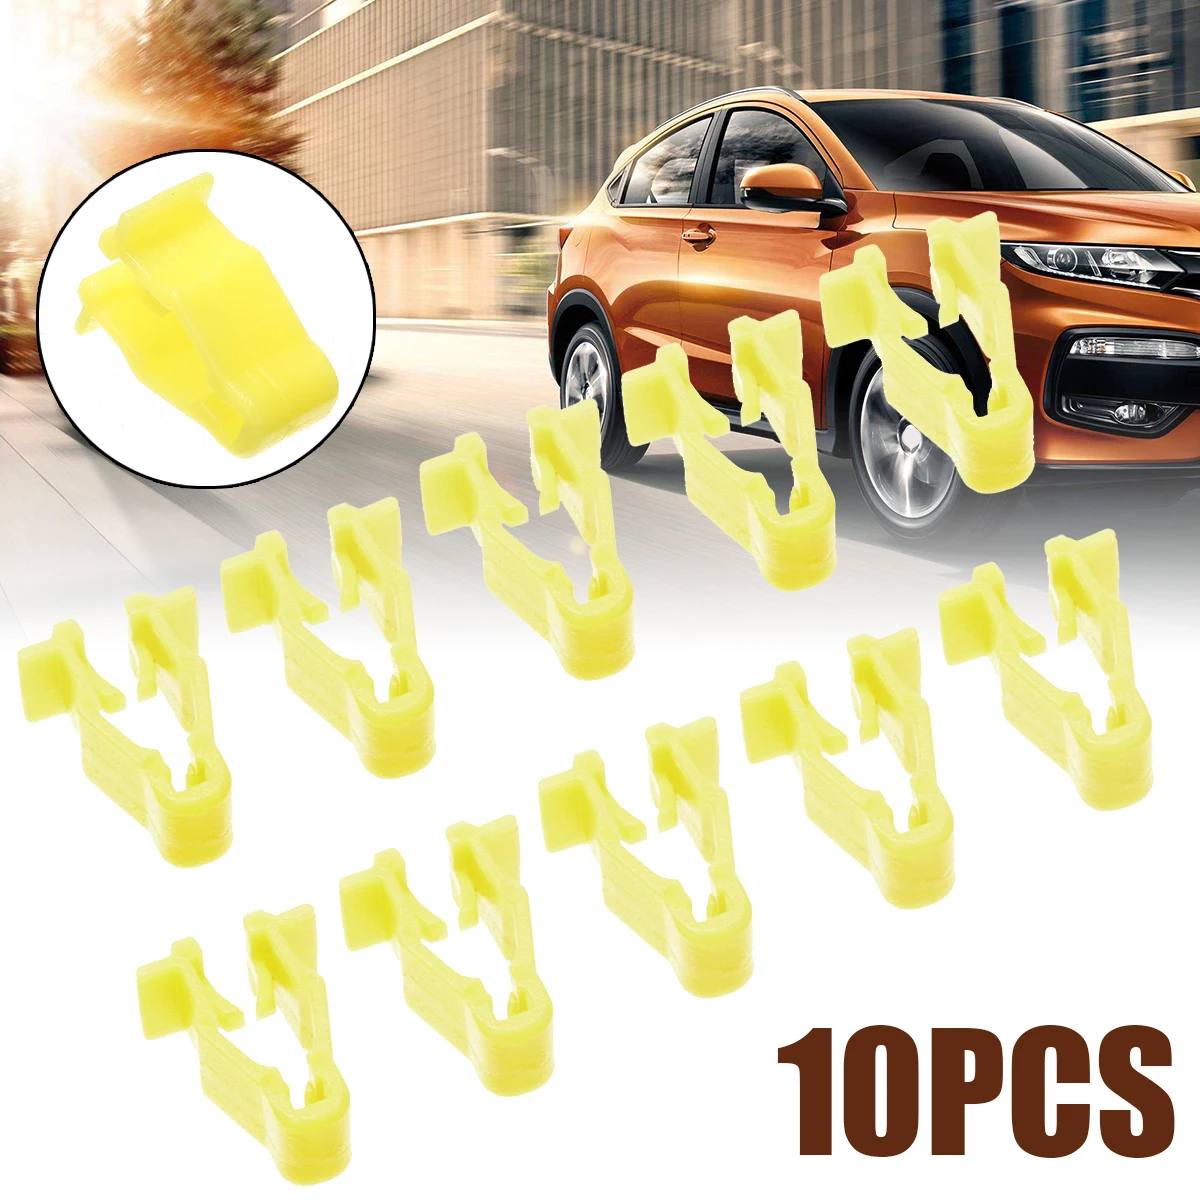 10 шт./компл. желтый автомобиль колесная арка с защелкой отделка клип 90601-SMG-003 для Honda Civic CRV вариабельности сердечного ритма